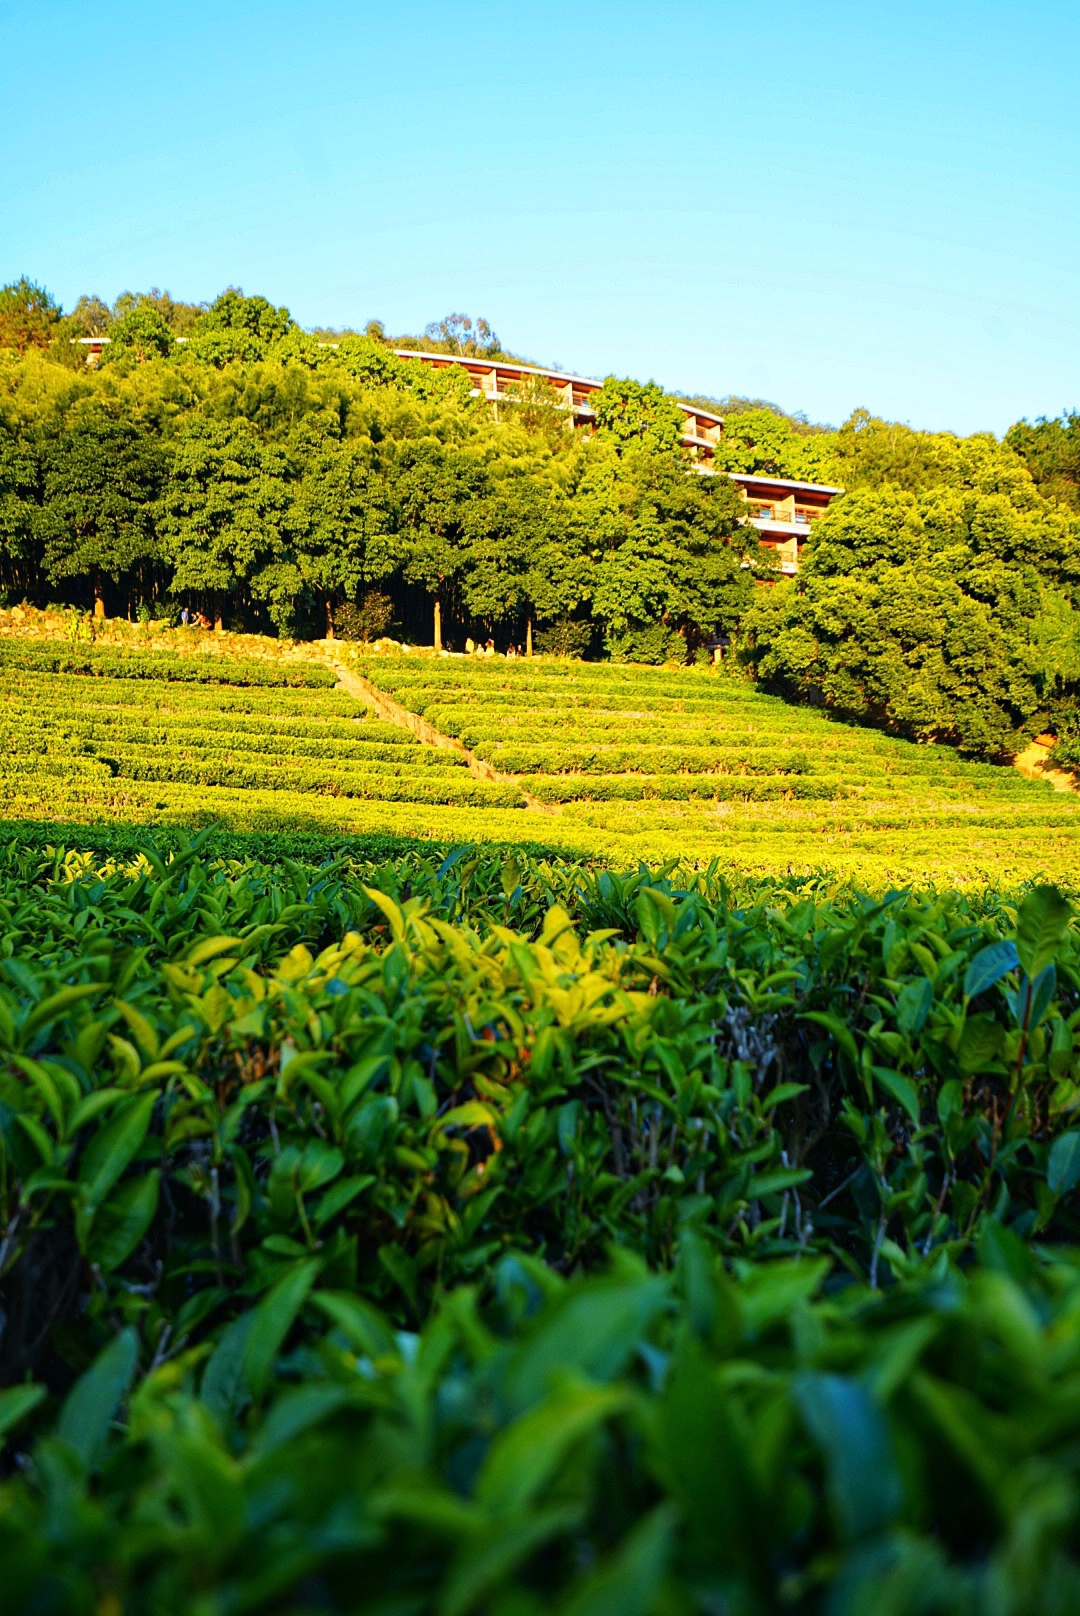 雁南飞茶田是梅州一个著名景区,拥有两千多亩的茶田,既是一个景区也是